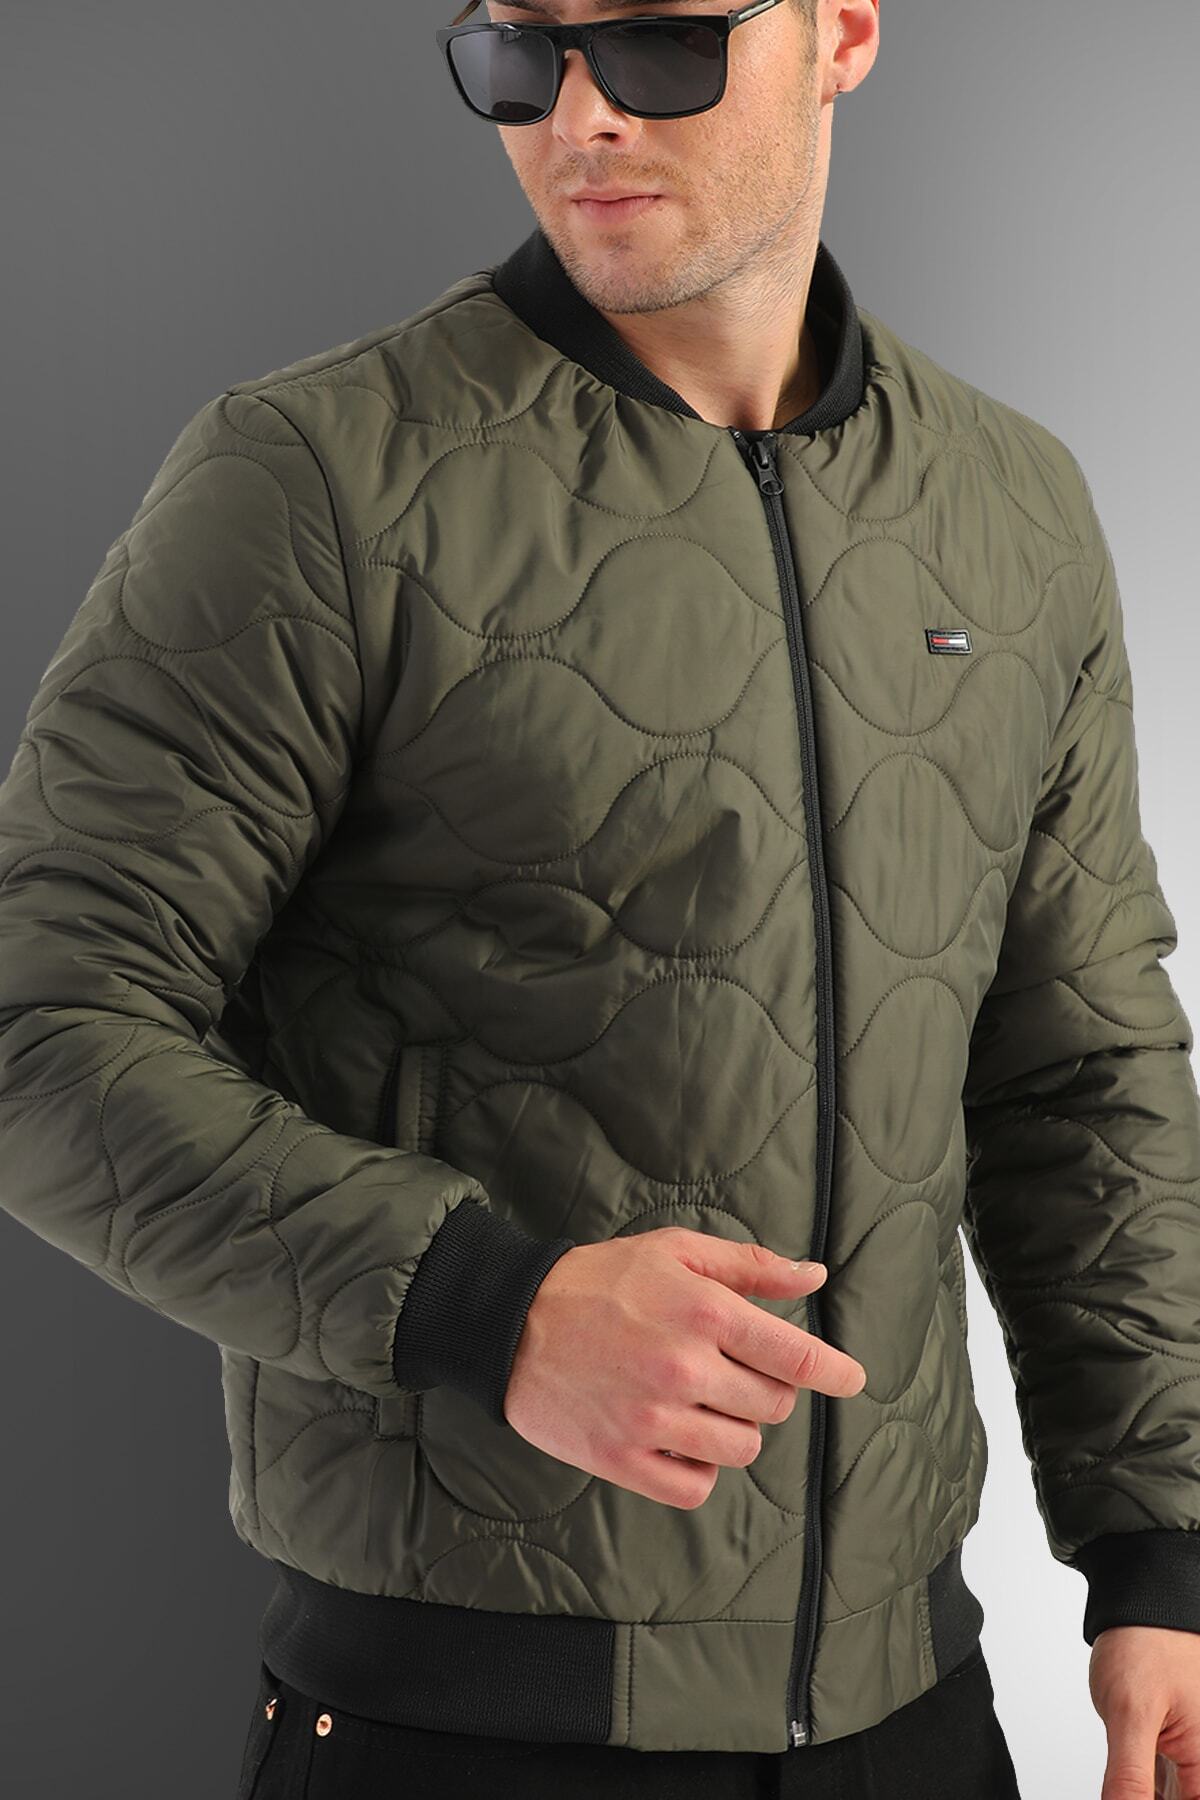 D1fference pánsky khaki vodný a vetruodolný prešívaný vzorovaný zimný kabát.